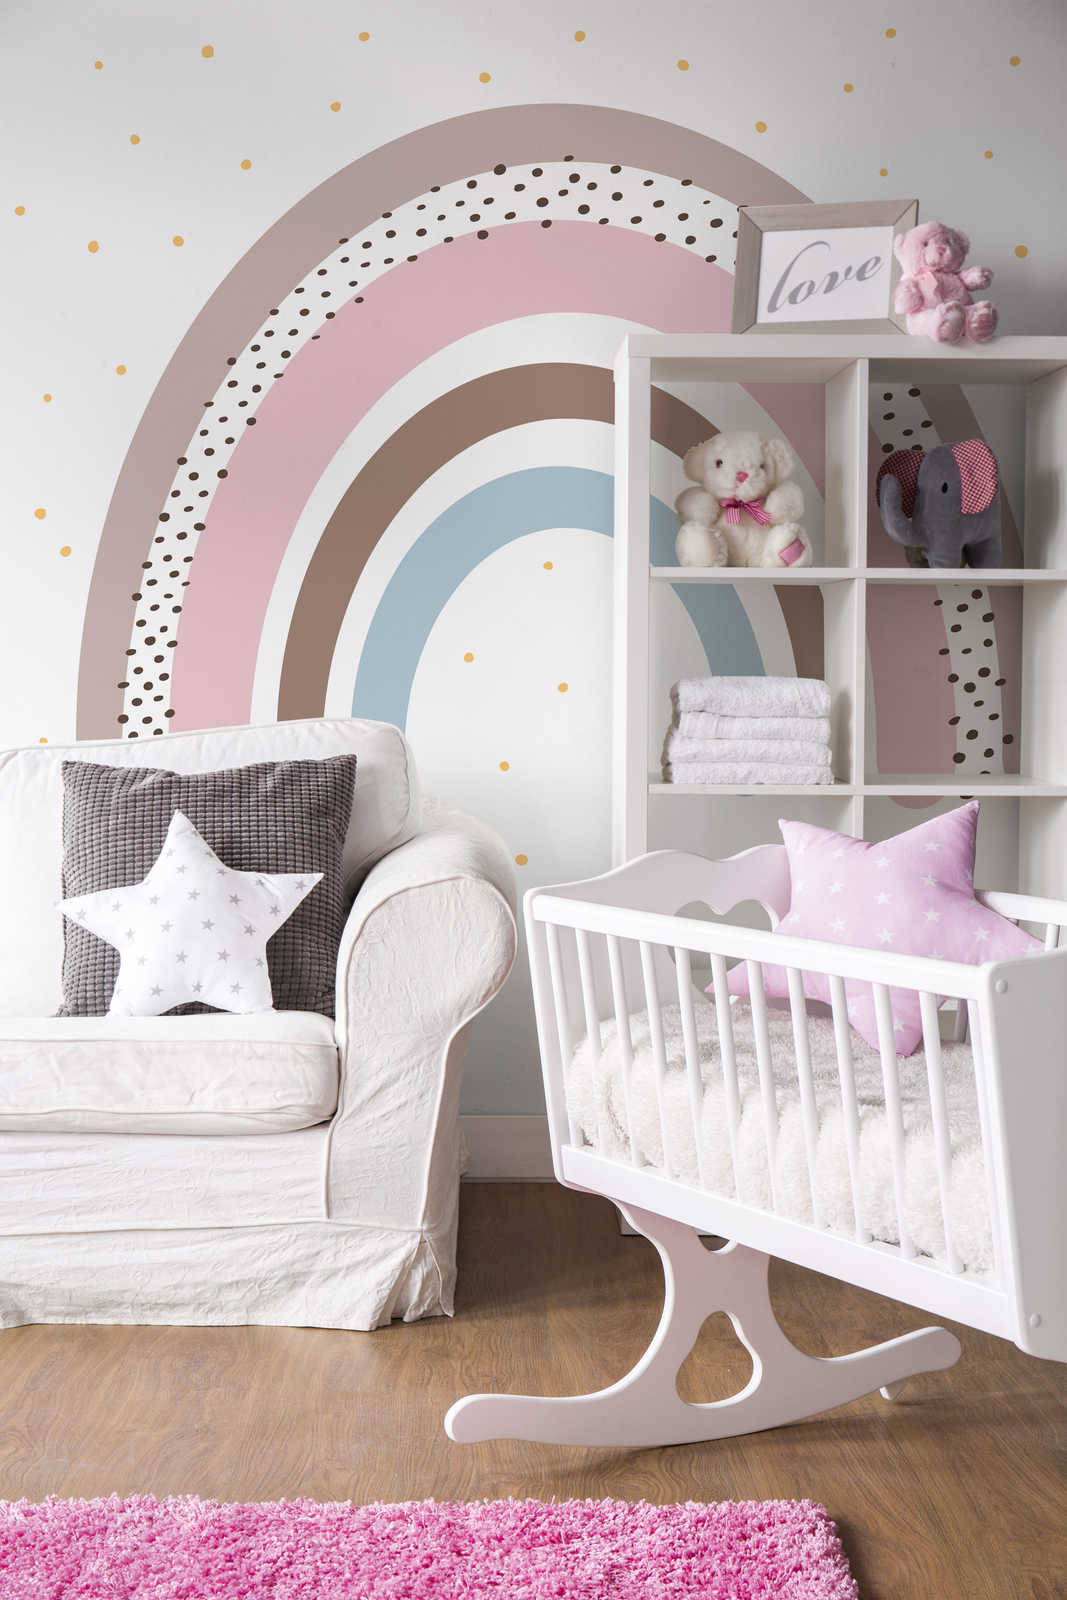             Papel pintado arco iris con lunares para la habitación del bebé
        